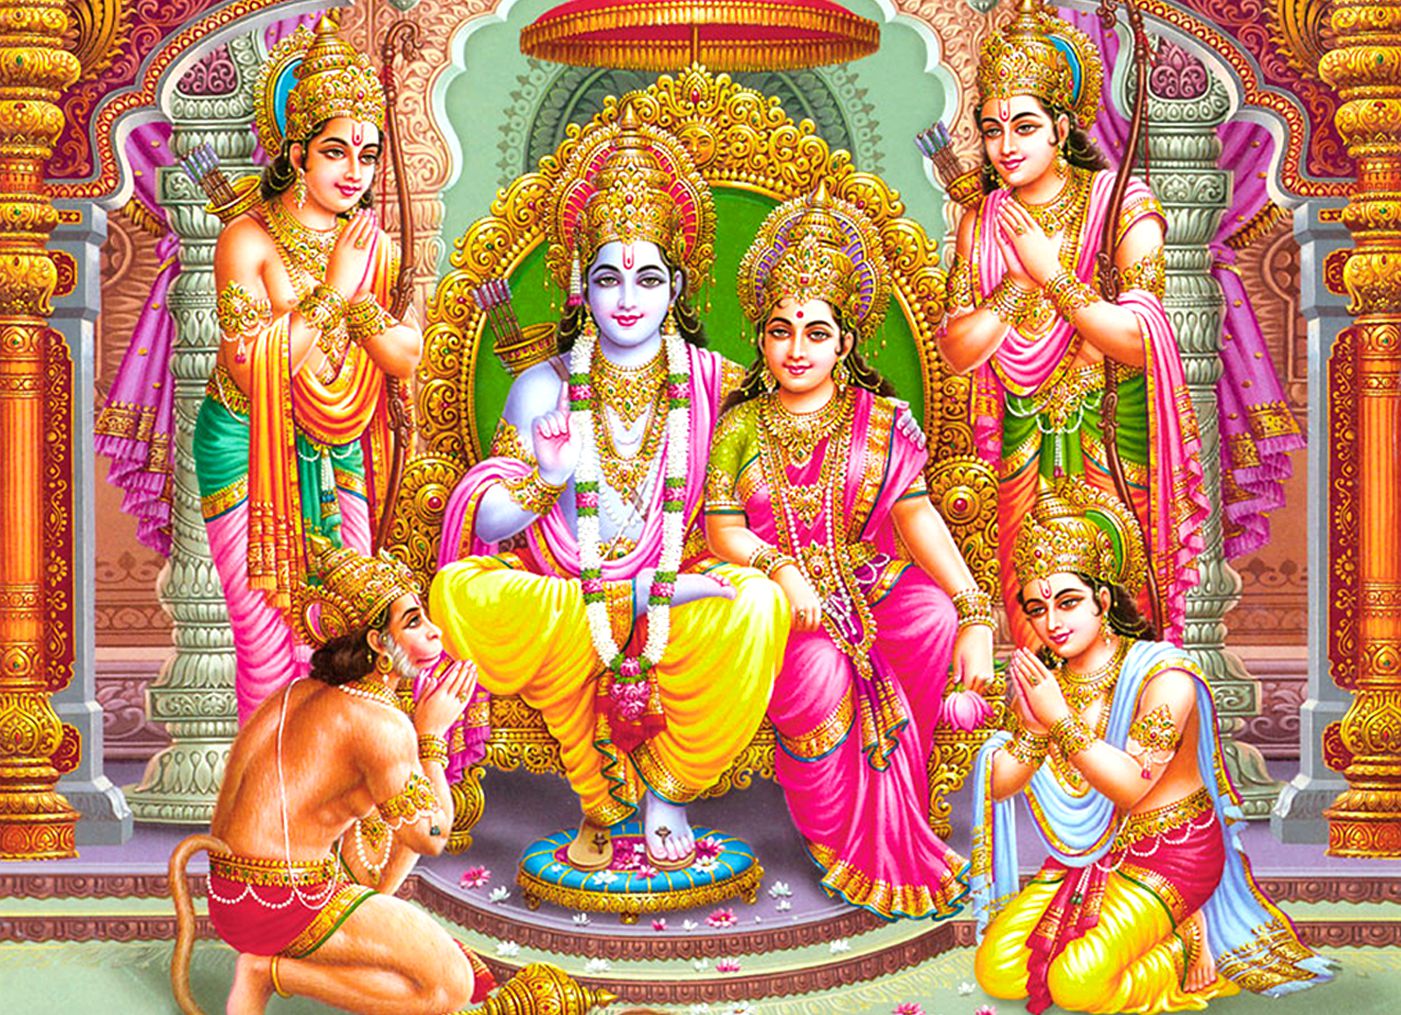 Ram Darbar: Shri Ram Darbar Images Wallpapers Free Download